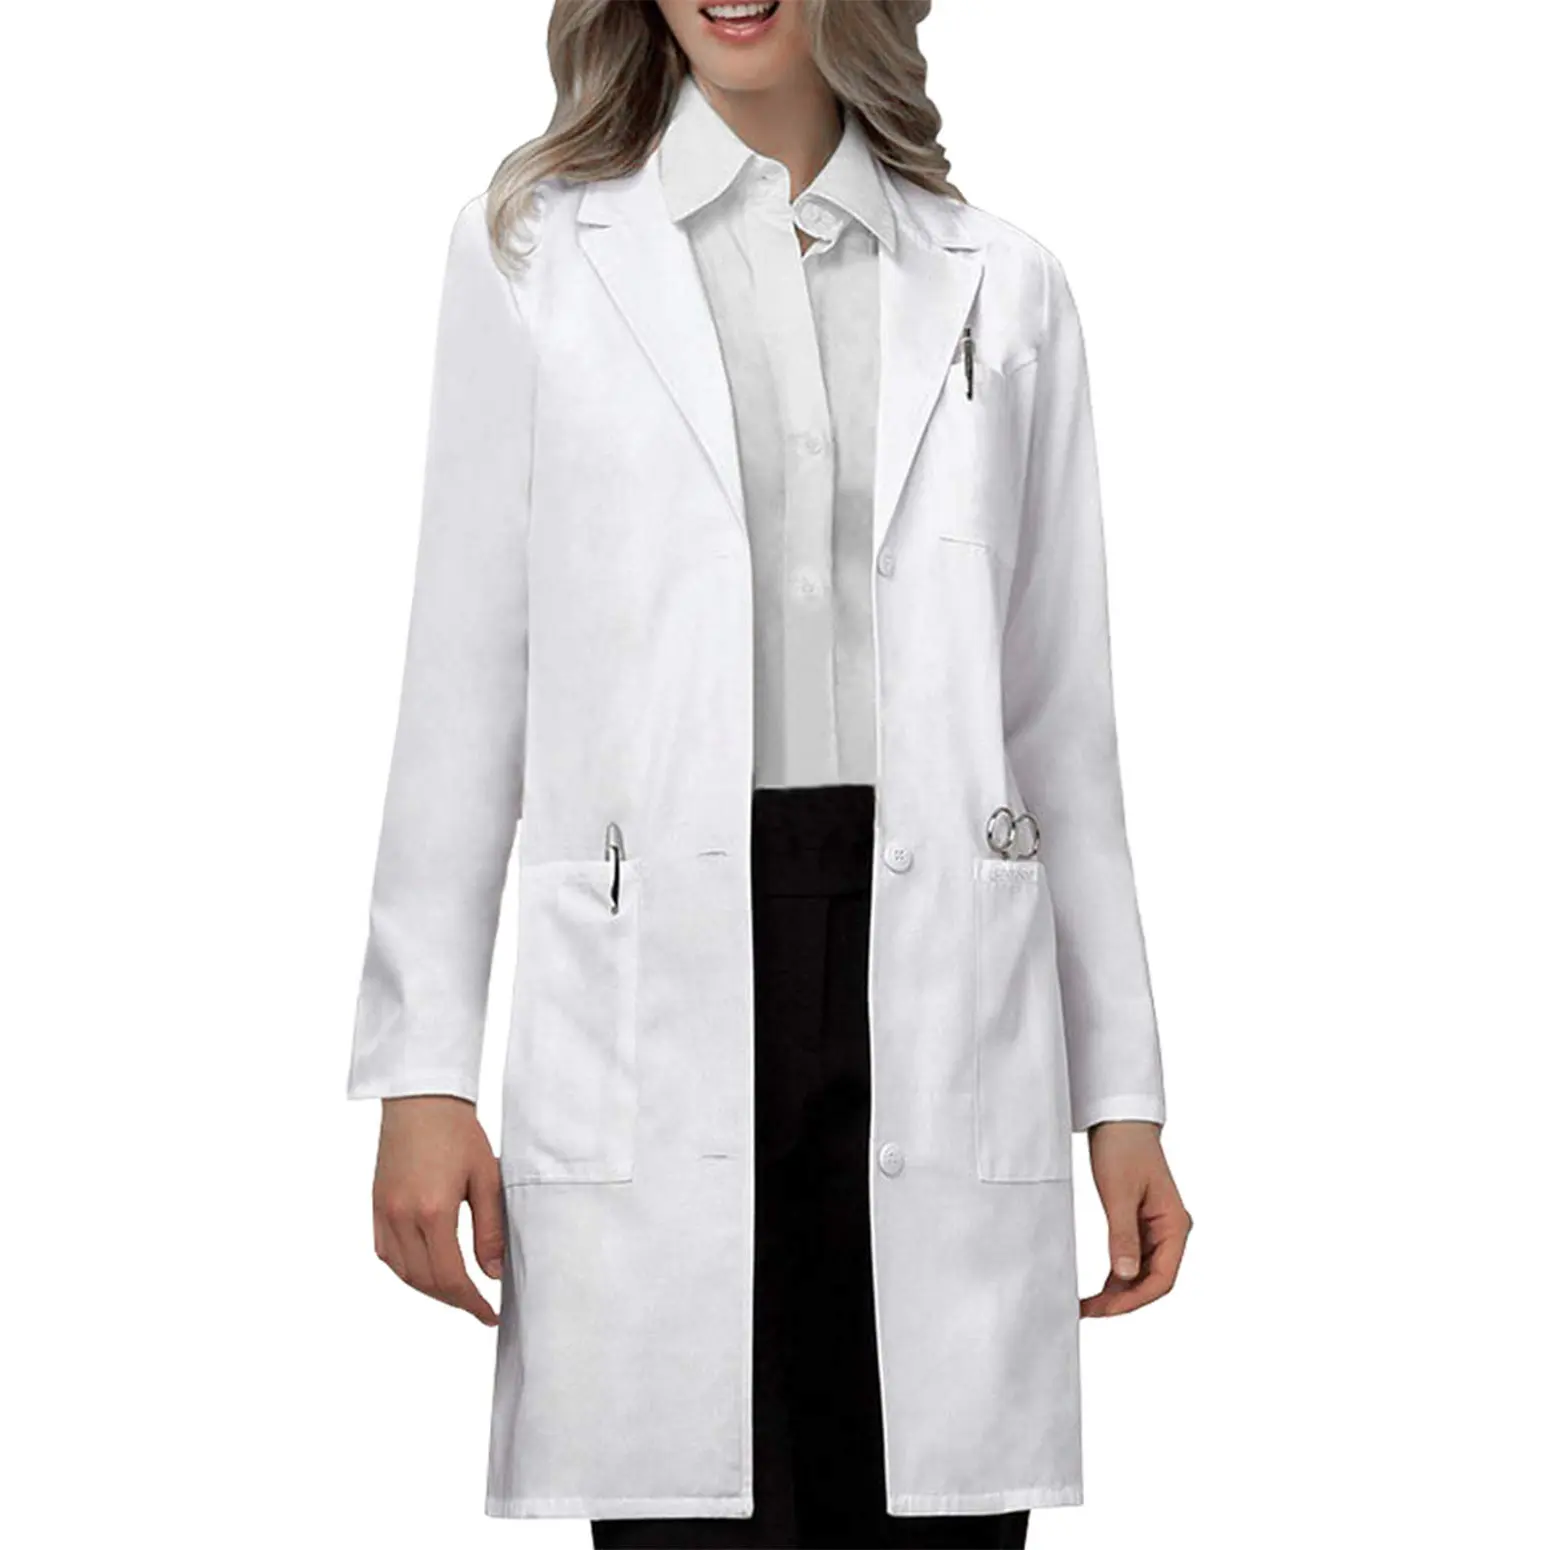 Blouse de laboratoire professionnelle pour femmes hommes à manches longues blanc unisexe hôpital clinique pour animaux de compagnie médecin infirmière portant uniforme uniforme médical